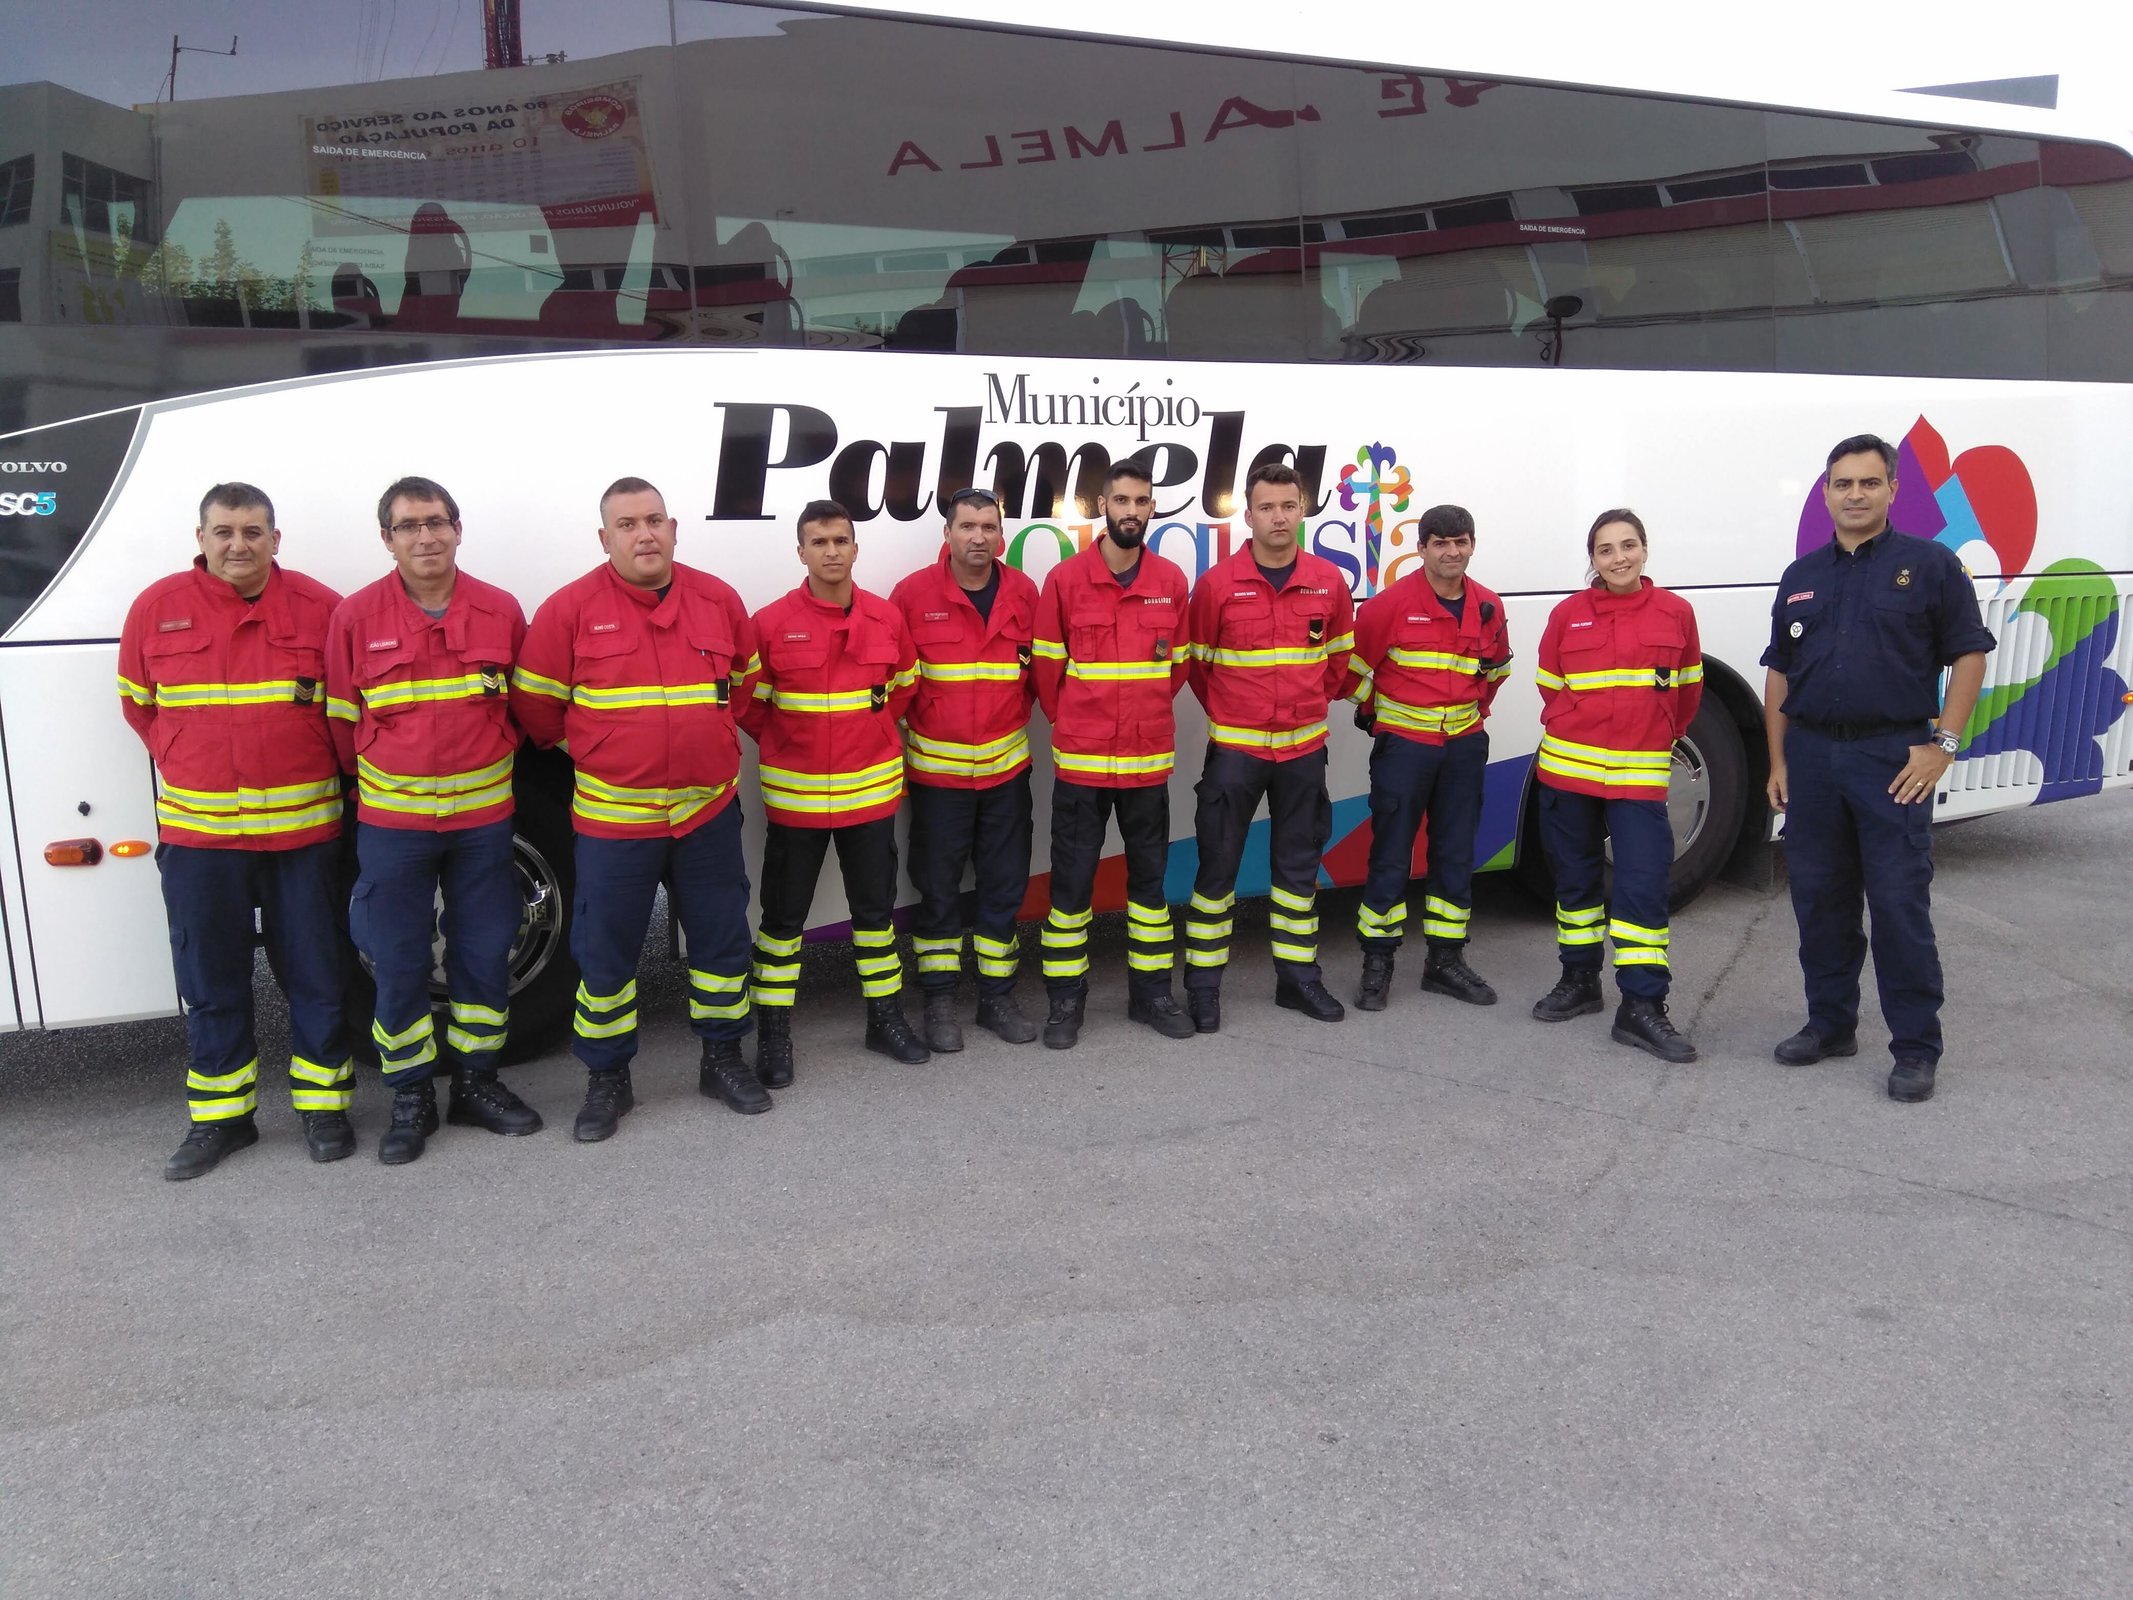 Município de Palmela apoia rendição de bombeiros em serviço no concelho de Monchique